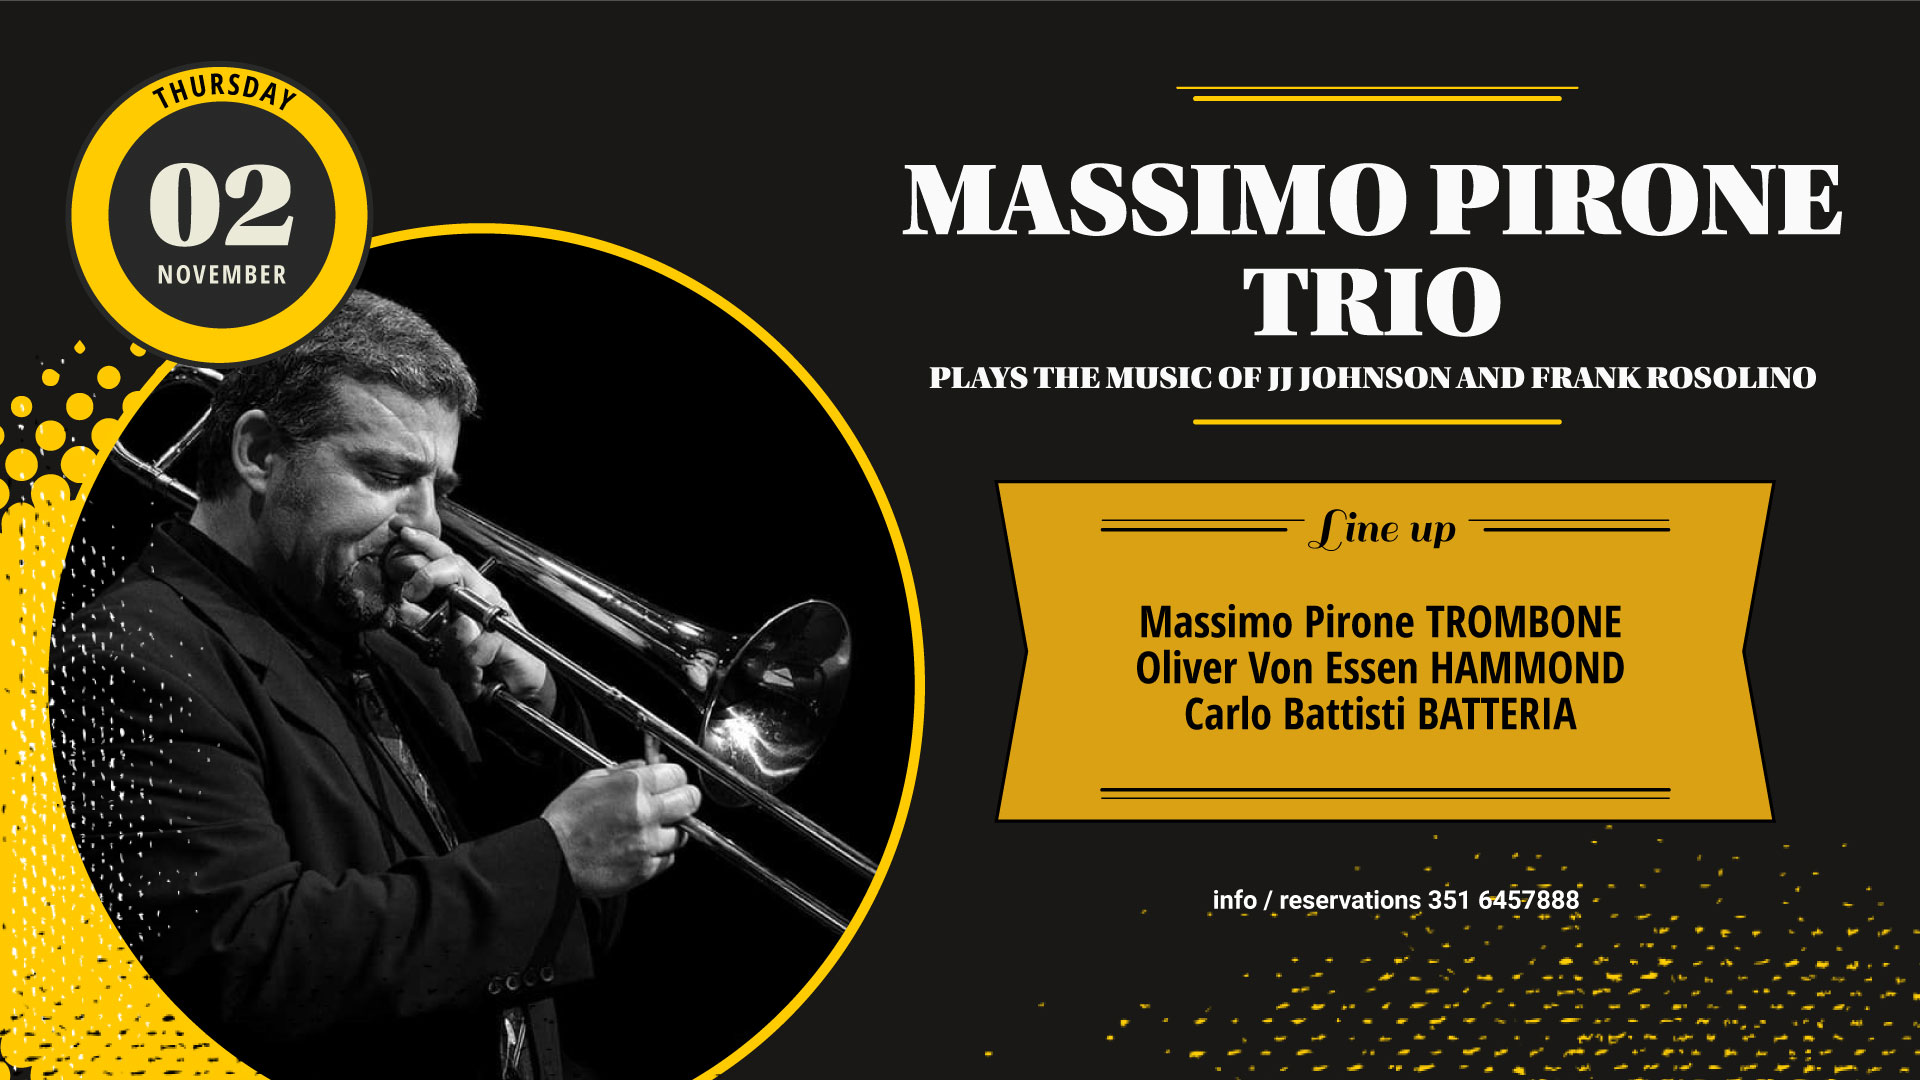 Massimo Pirone trio